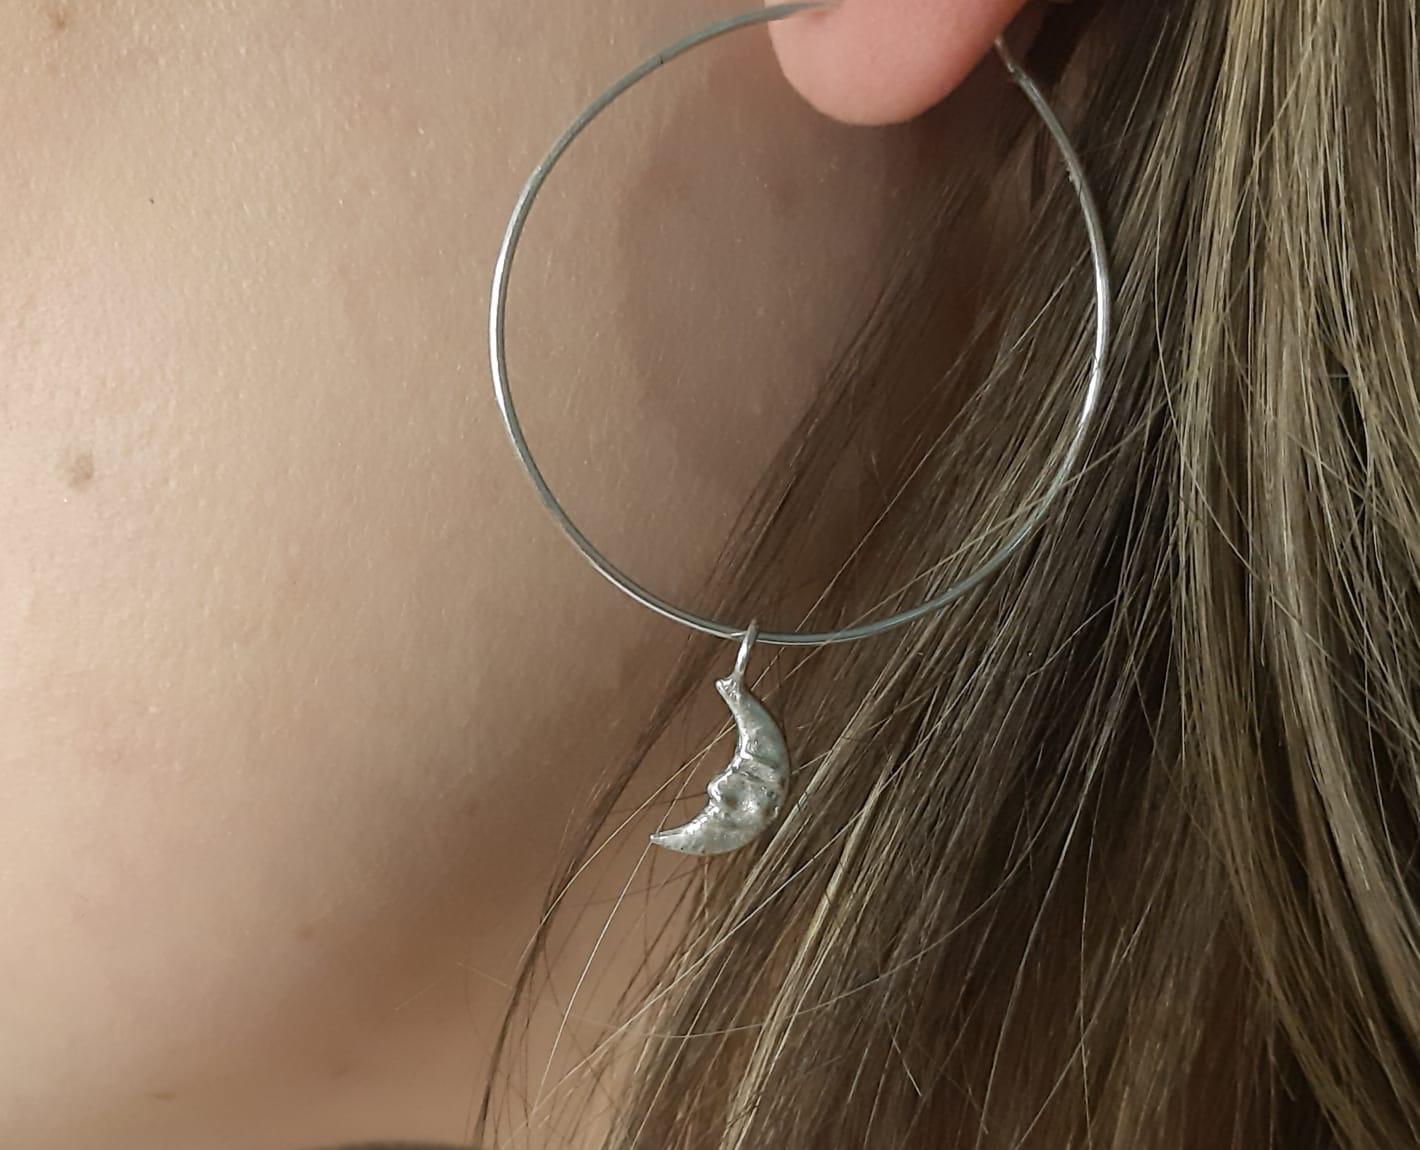 Danú Cresent Moon hoops - sterling silver earrings